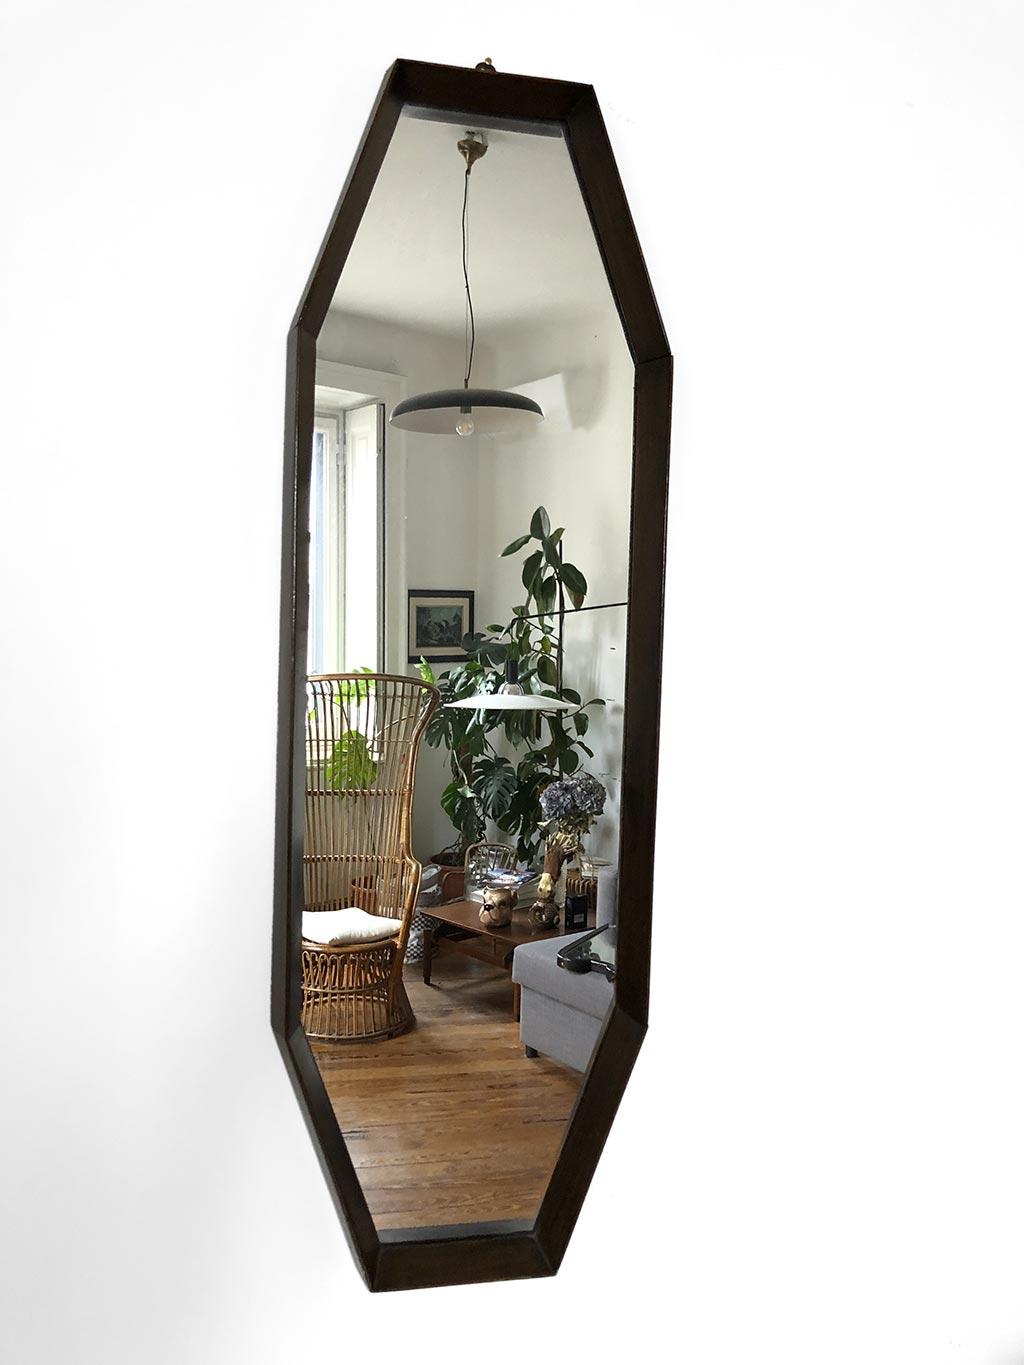 Italienischer Spiegel aus den 1960er Jahren mit länglicher, achteckiger Form. Rahmen aus Teakholz, originaler Silberspiegel. Sehr guter Zustand. Natürliche Zeichen der Zeit.

abmessung 92 x 29 x 5 cm